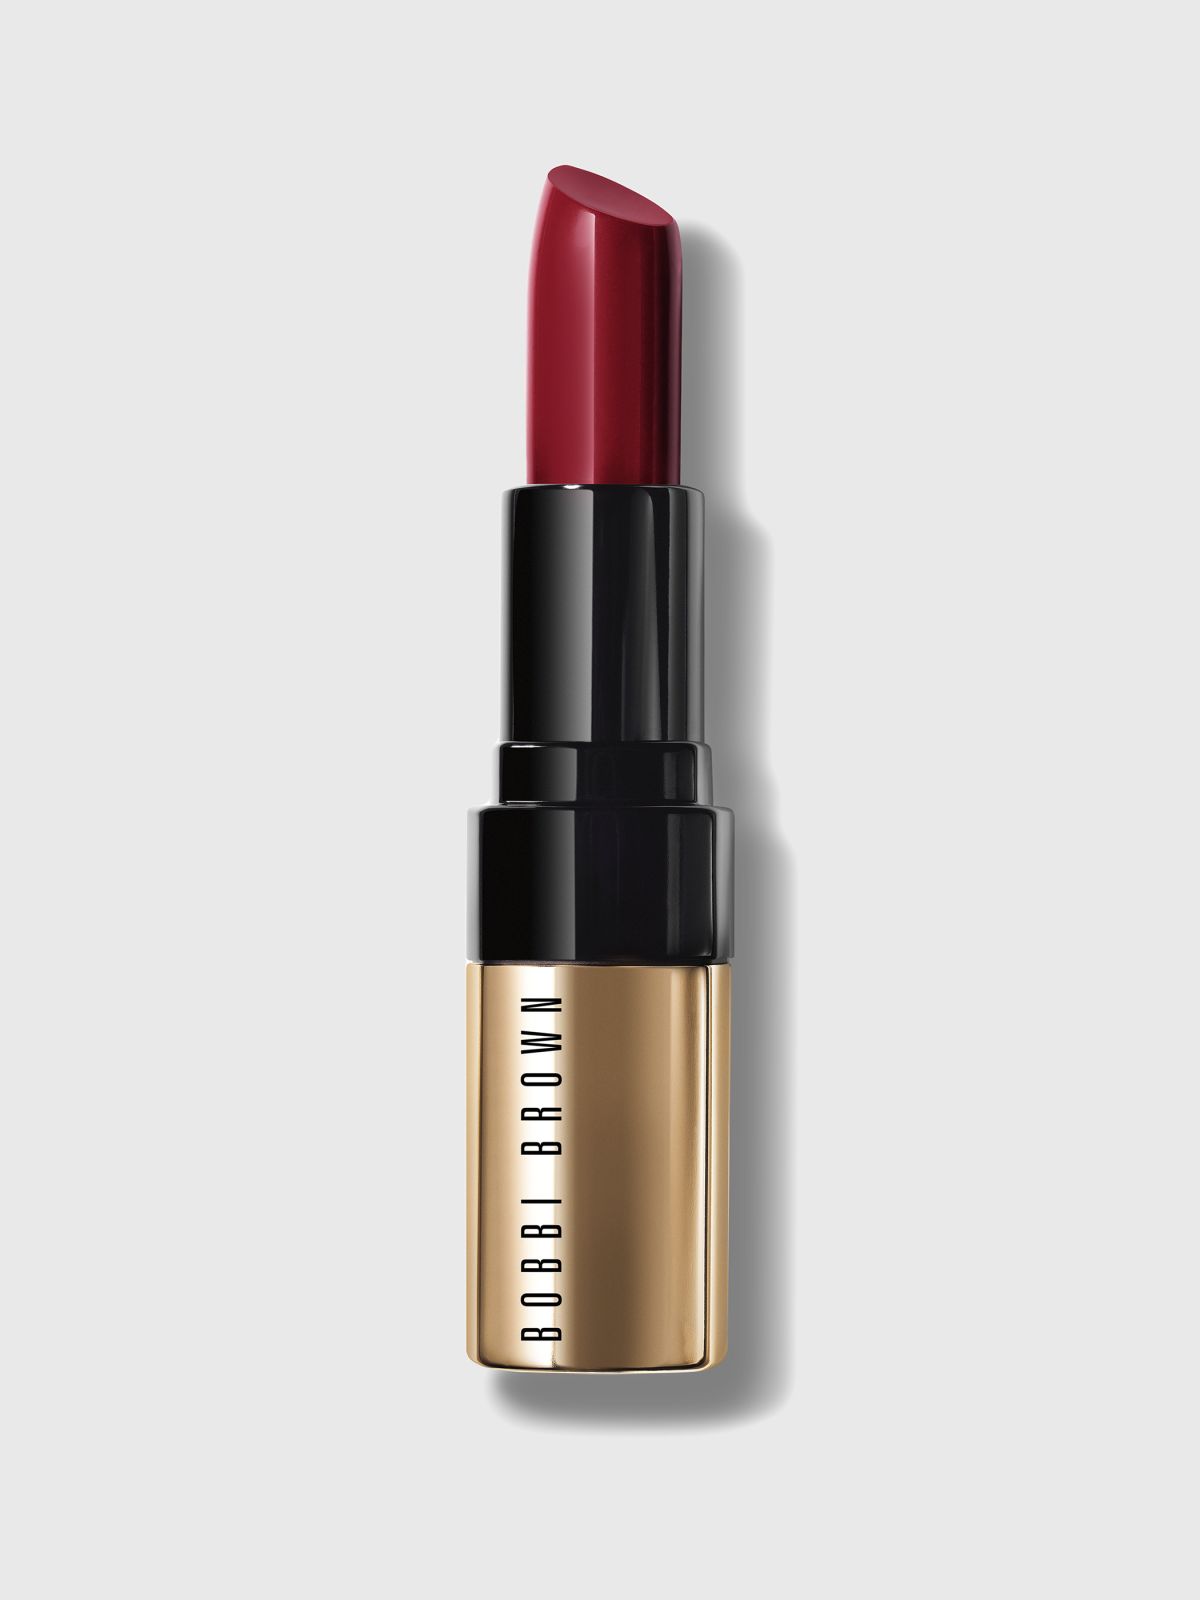  שפתון מפנק עשיר בלחות Luxe Lip Color - NEUTRAL ROSE של BOBBI BROWN